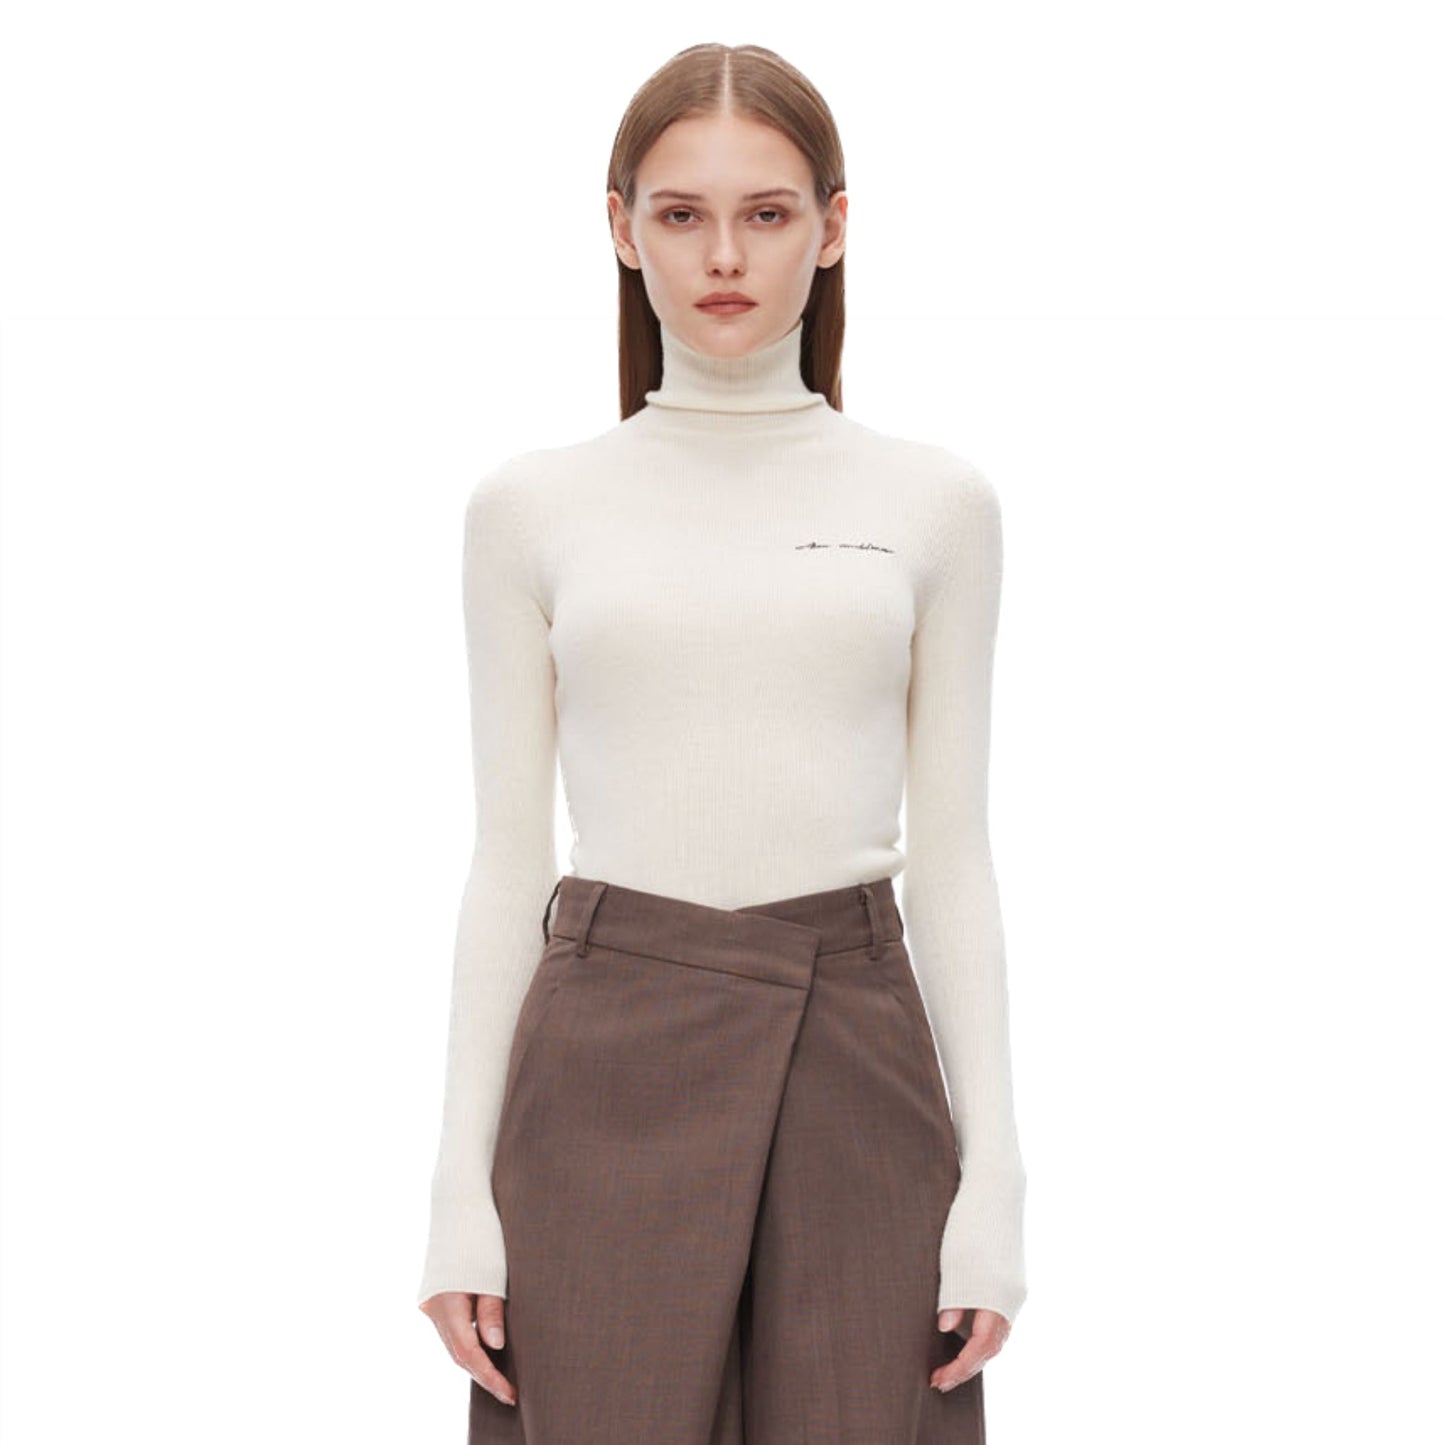 Ann Andelman White Pullover Half-turtleneck Knit Shirt